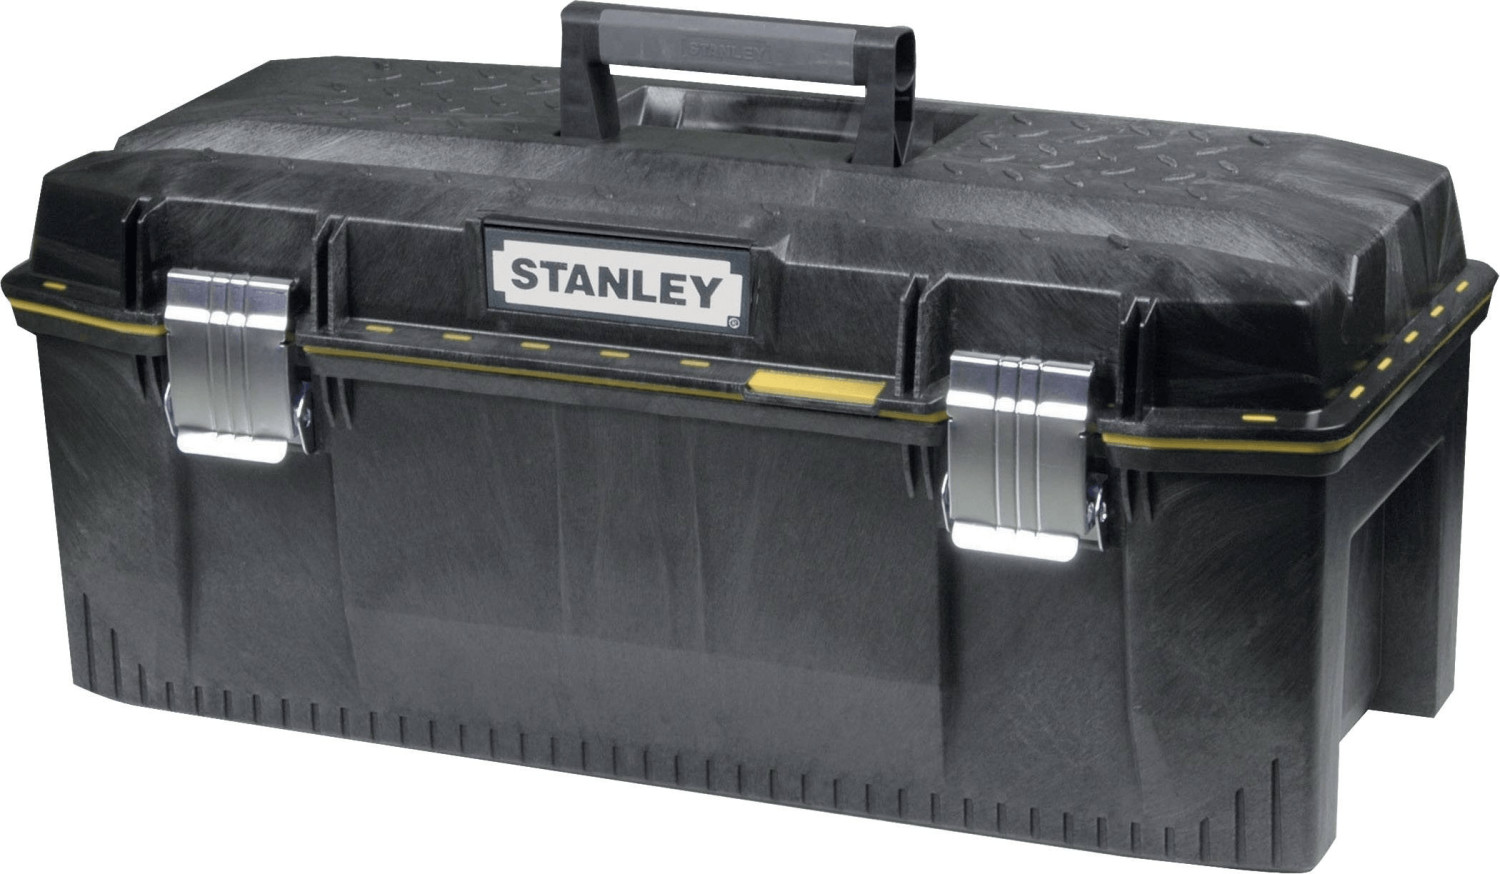 Stanley 1-94-749 a € 39,99 (oggi)  Migliori prezzi e offerte su idealo